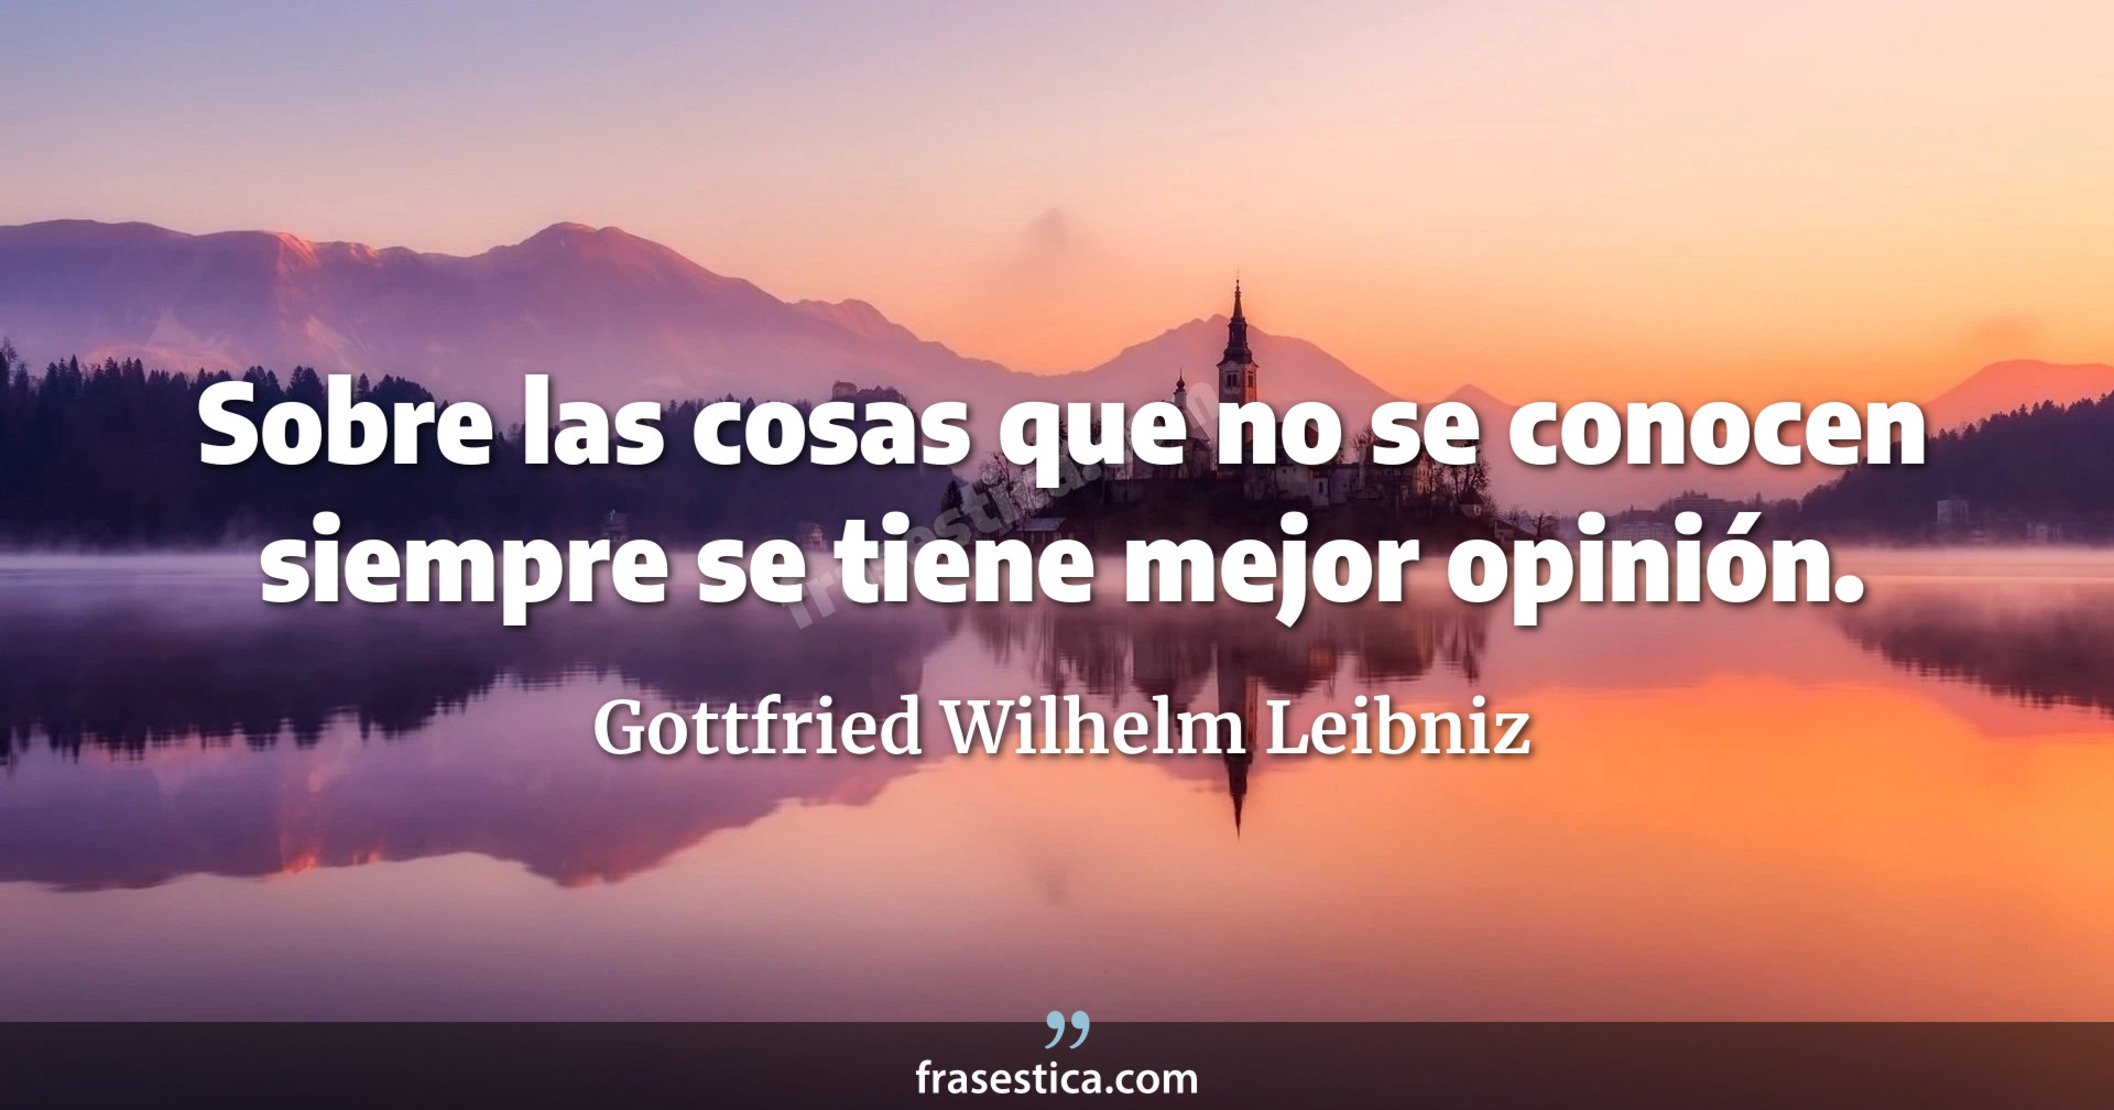 Sobre las cosas que no se conocen siempre se tiene mejor opinión. - Gottfried Wilhelm Leibniz